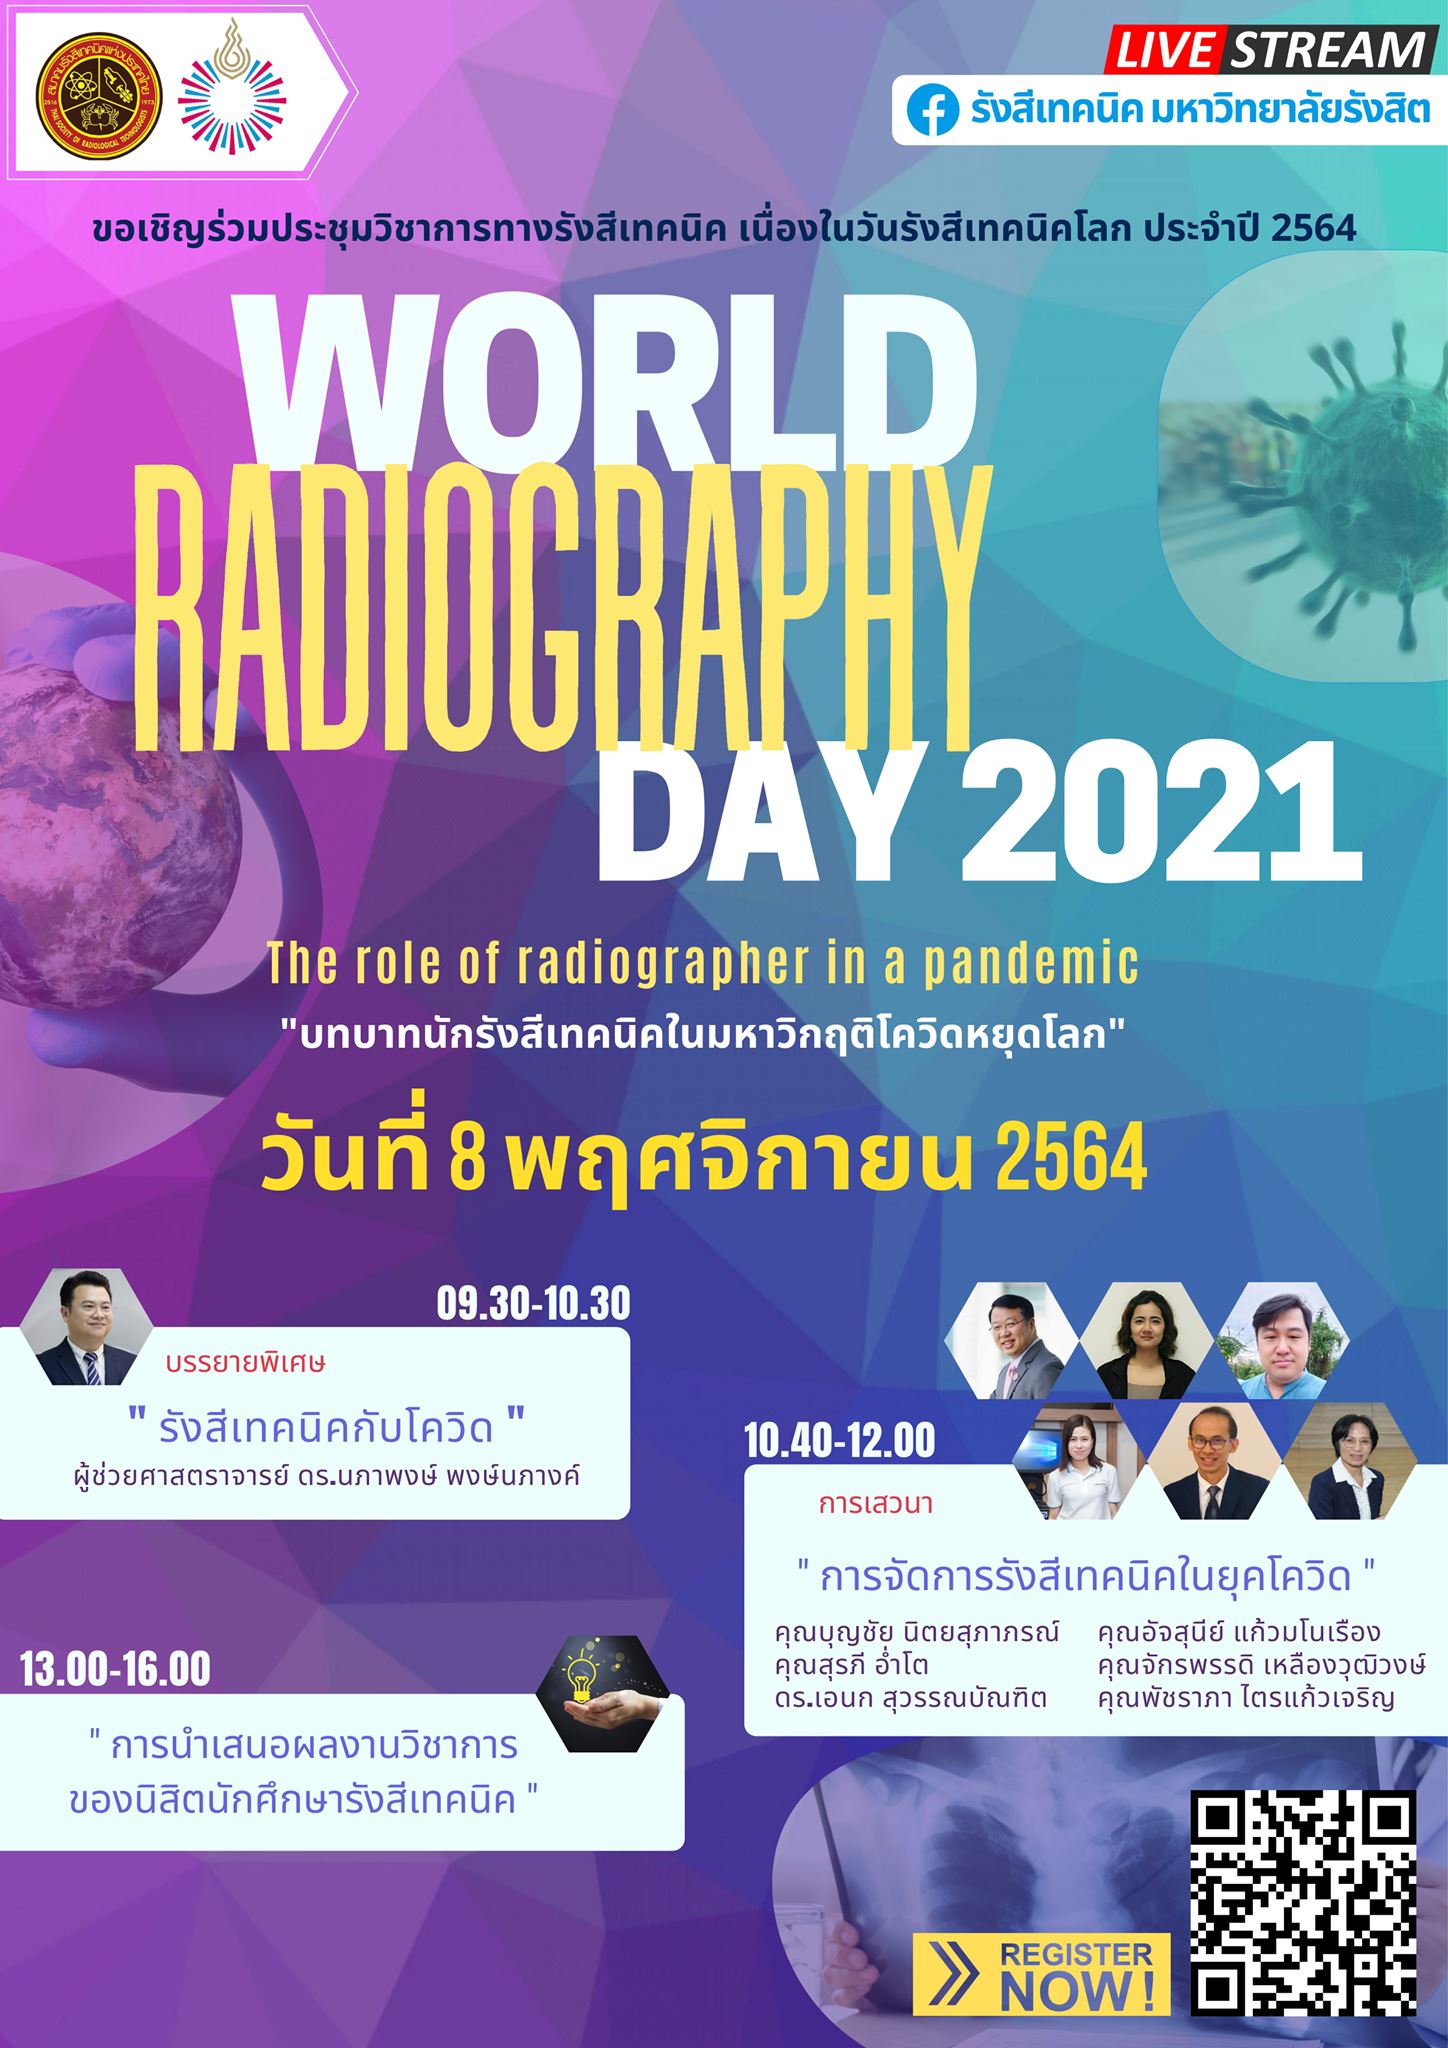 คณะรังสีเทคนิค ม.รังสิต จัด ประชุมวิชาการทางรังสีเทคนิค เนื่องในวันรังสีเทคนิคโลก (World Radiography Day)